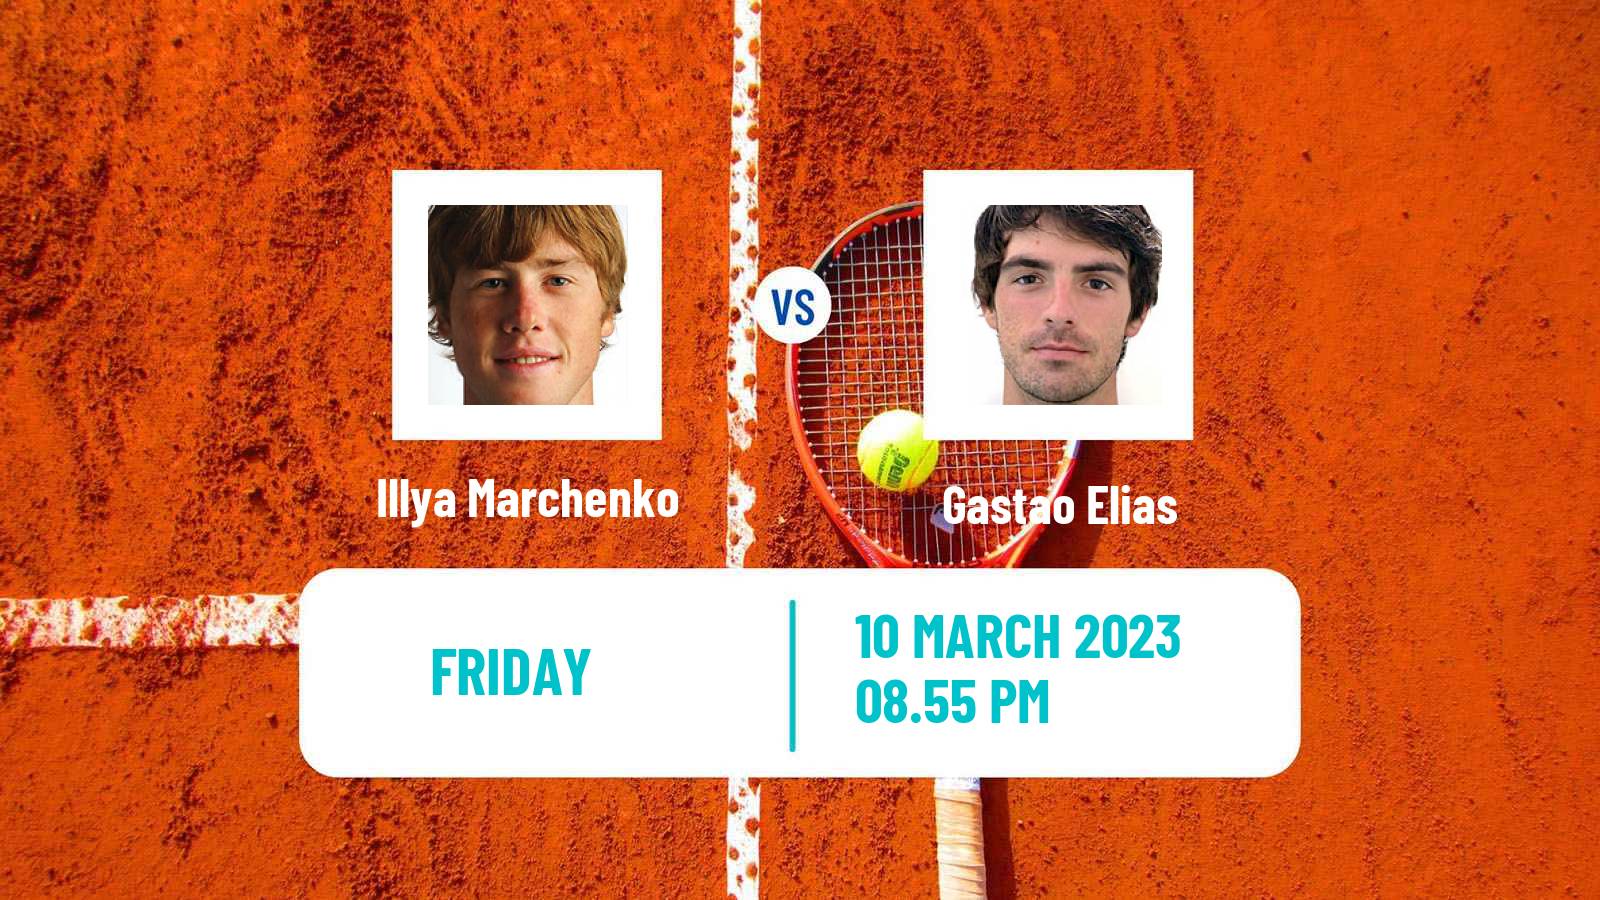 Tennis ATP Challenger Illya Marchenko - Gastao Elias